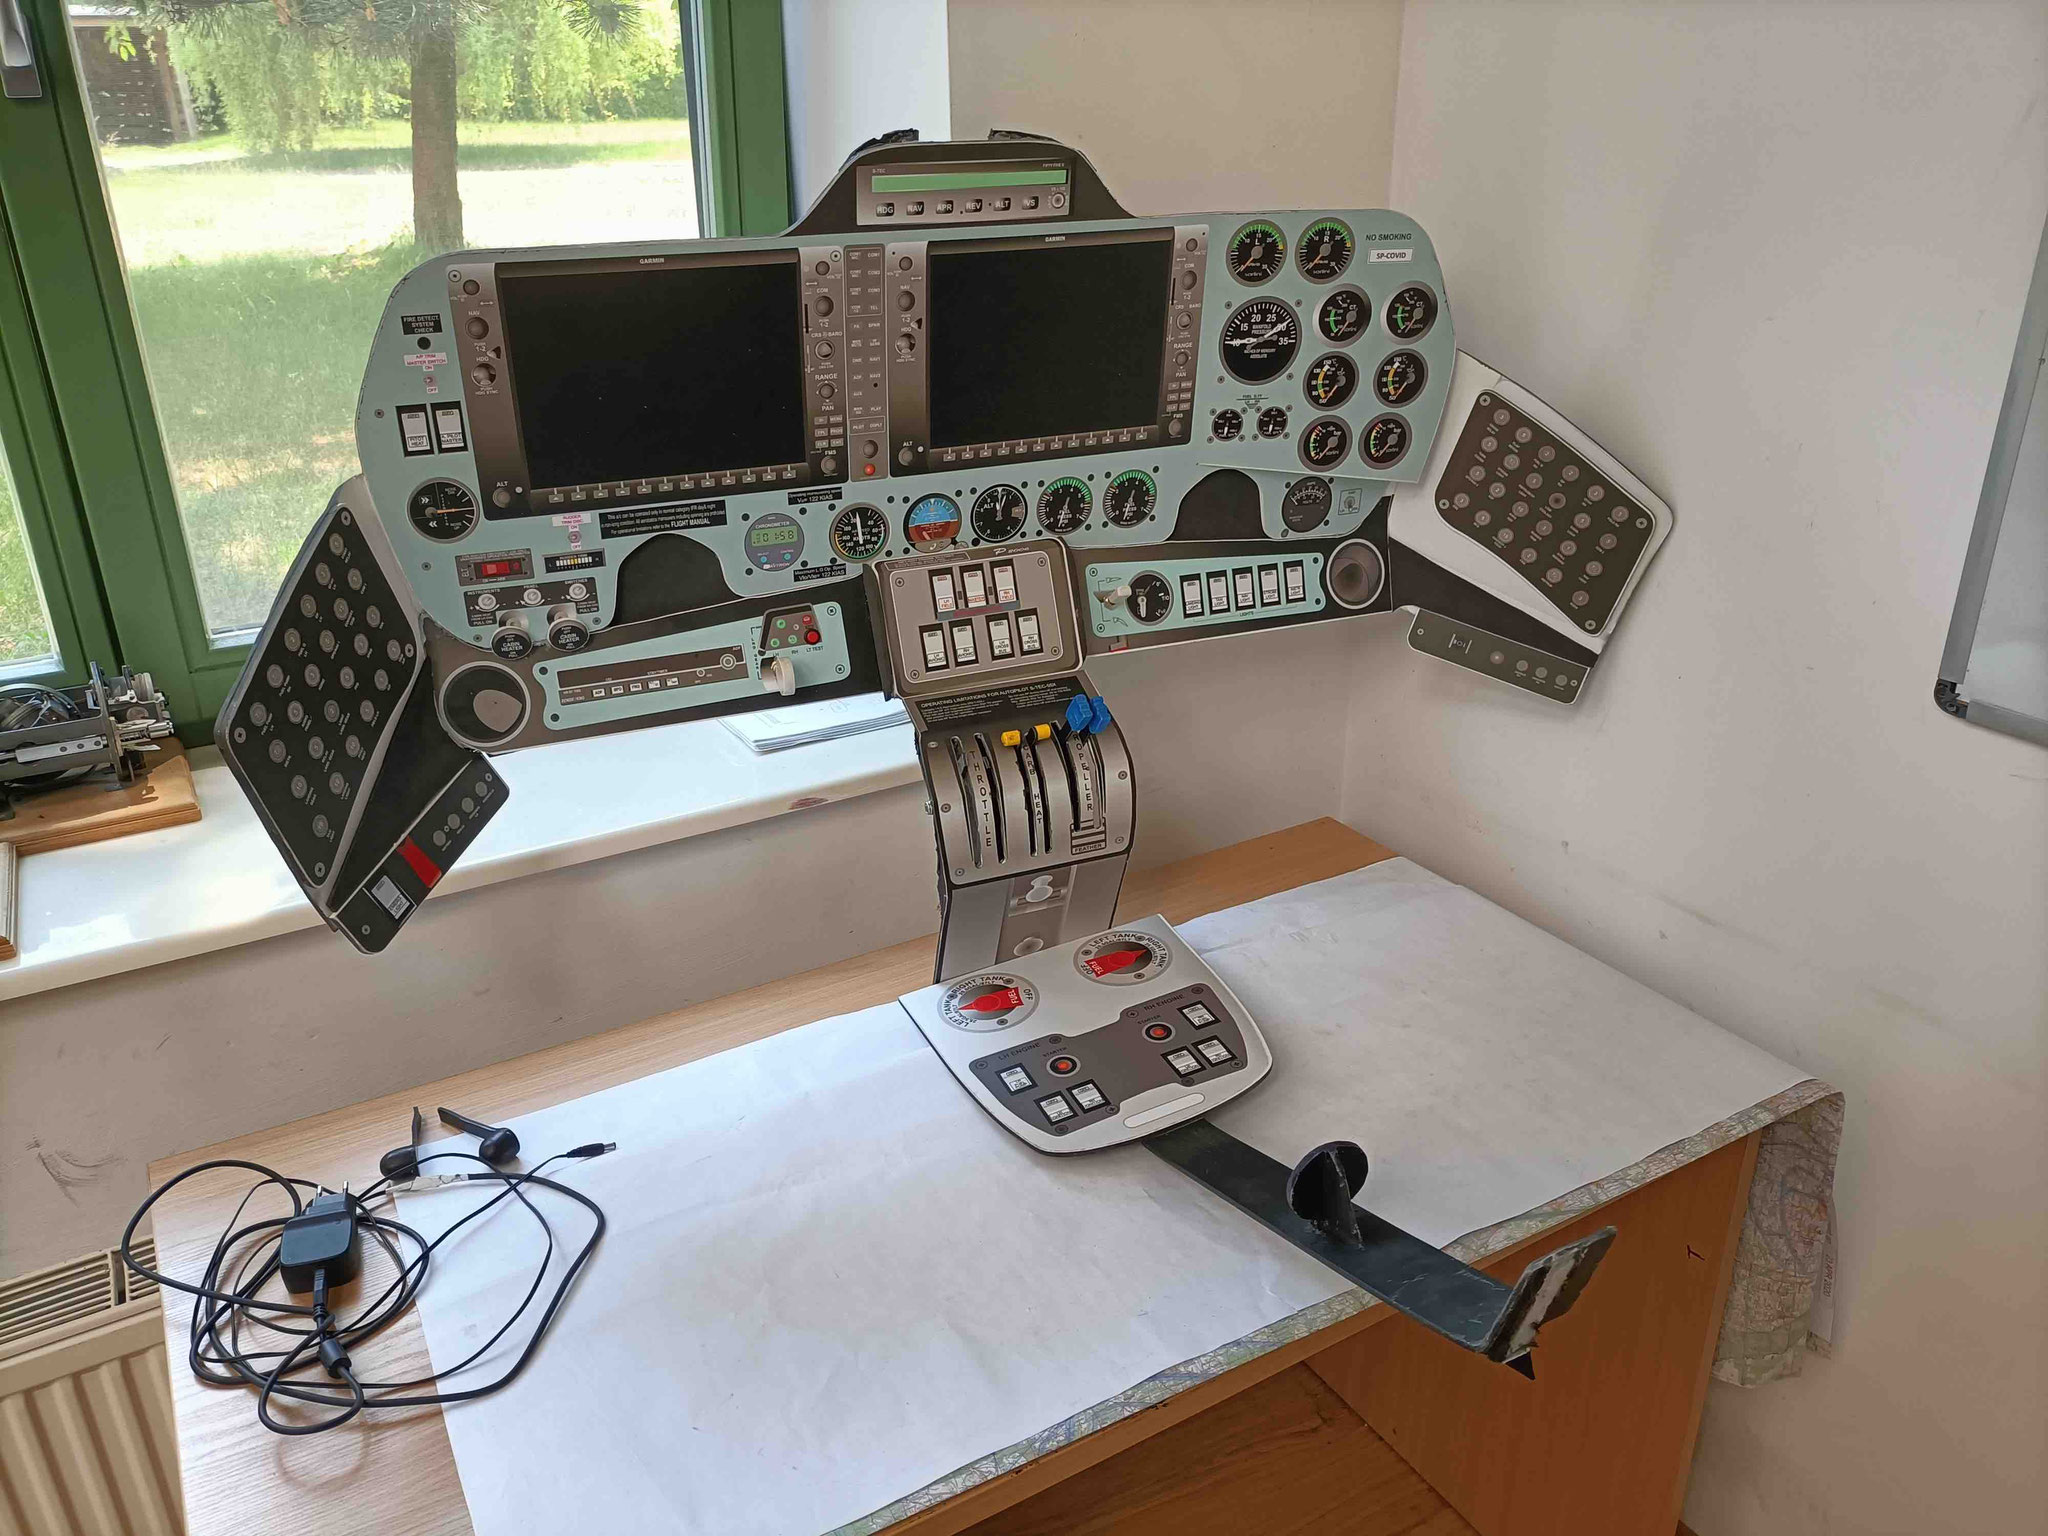 Flight deck panel mock-up, G1000 trainer software